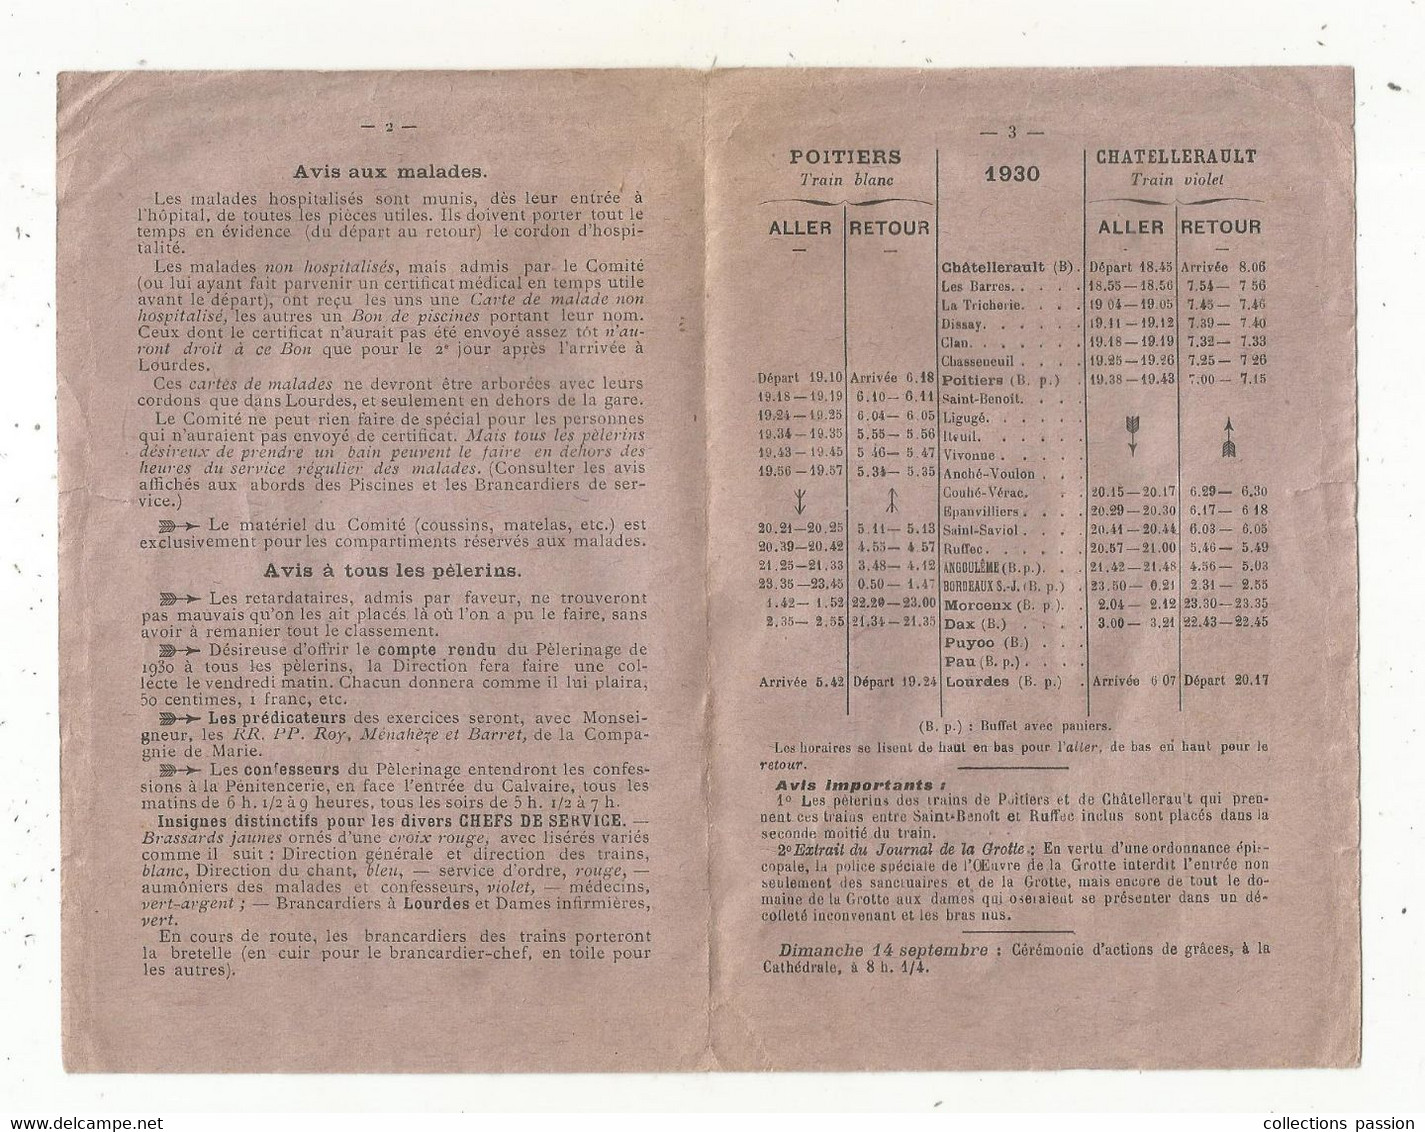 JC , Chemin De Fer, Horaires Des Trains , CHATELLERAULT, Vienne , Pélerinage Du Poitou , 1930, 3 Scans , Frais Fr 1.65 E - Ferrovie